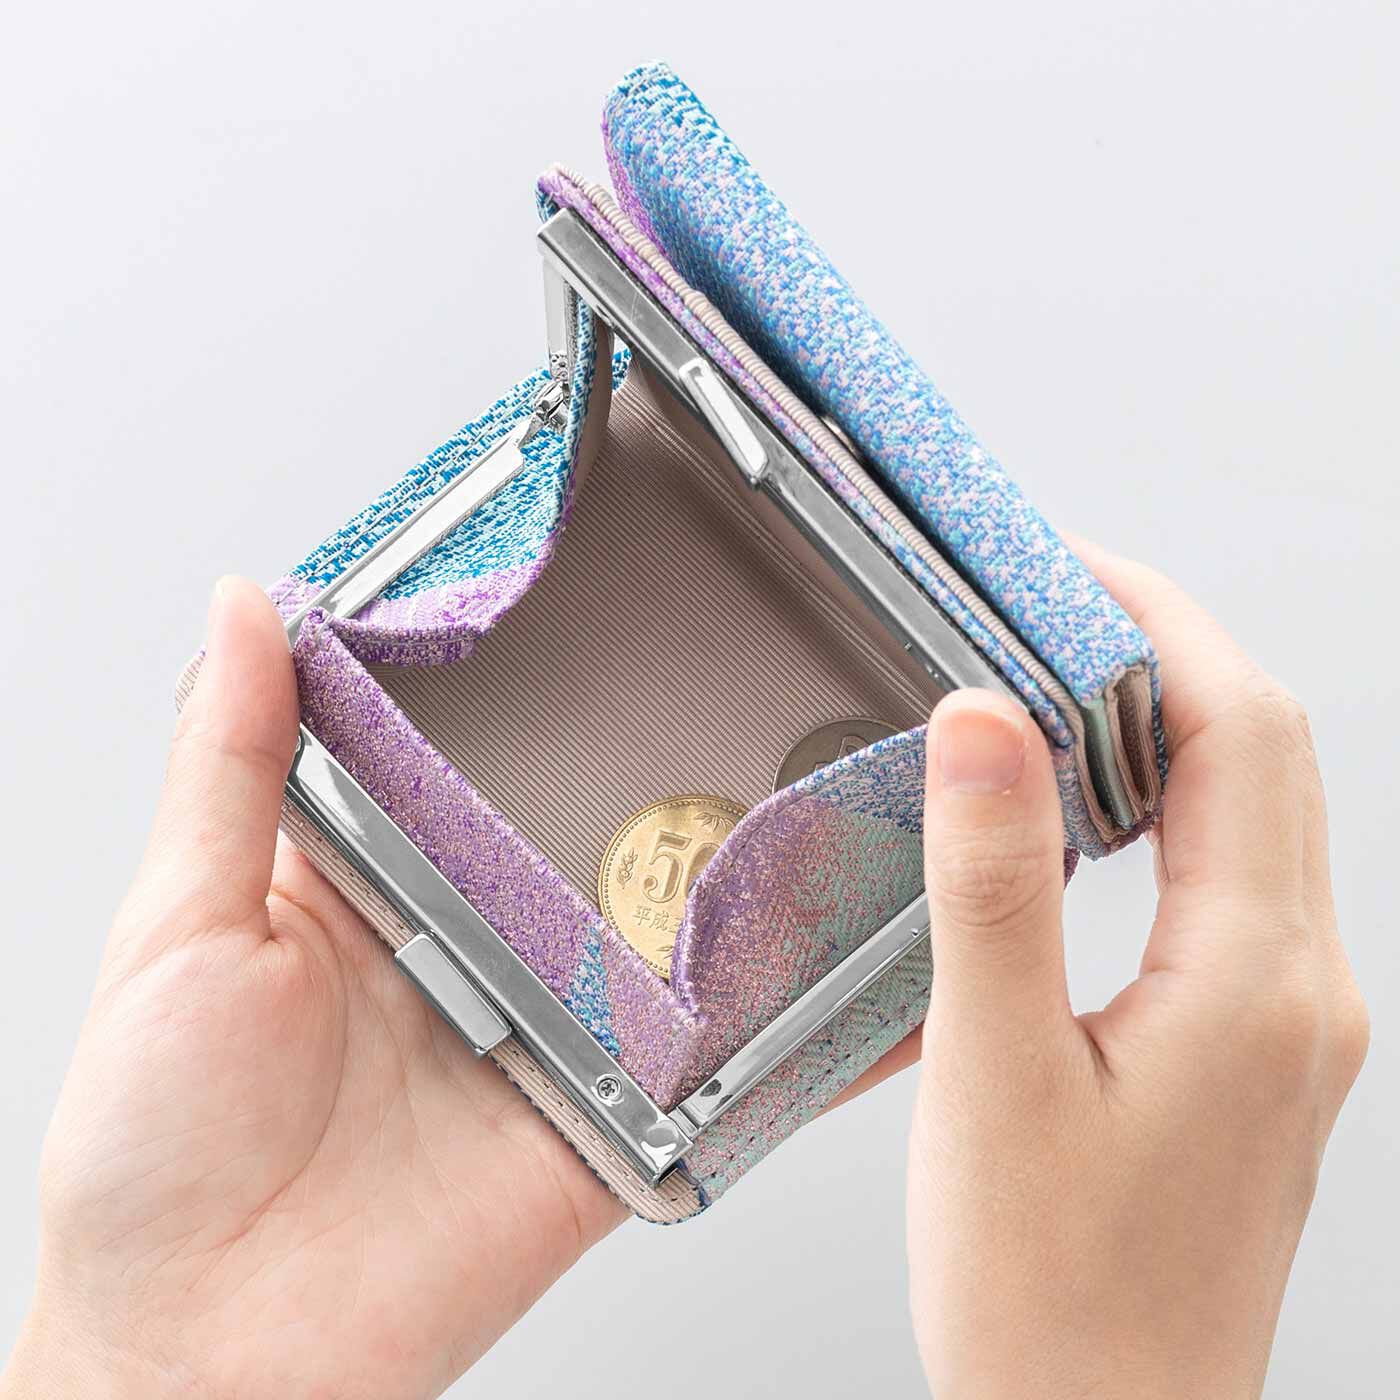 SeeMONO|特別な西陣織の生地で作った 三つ折りがま口ミニ財布|がばっと開いて使いやすいがま口コインケース。